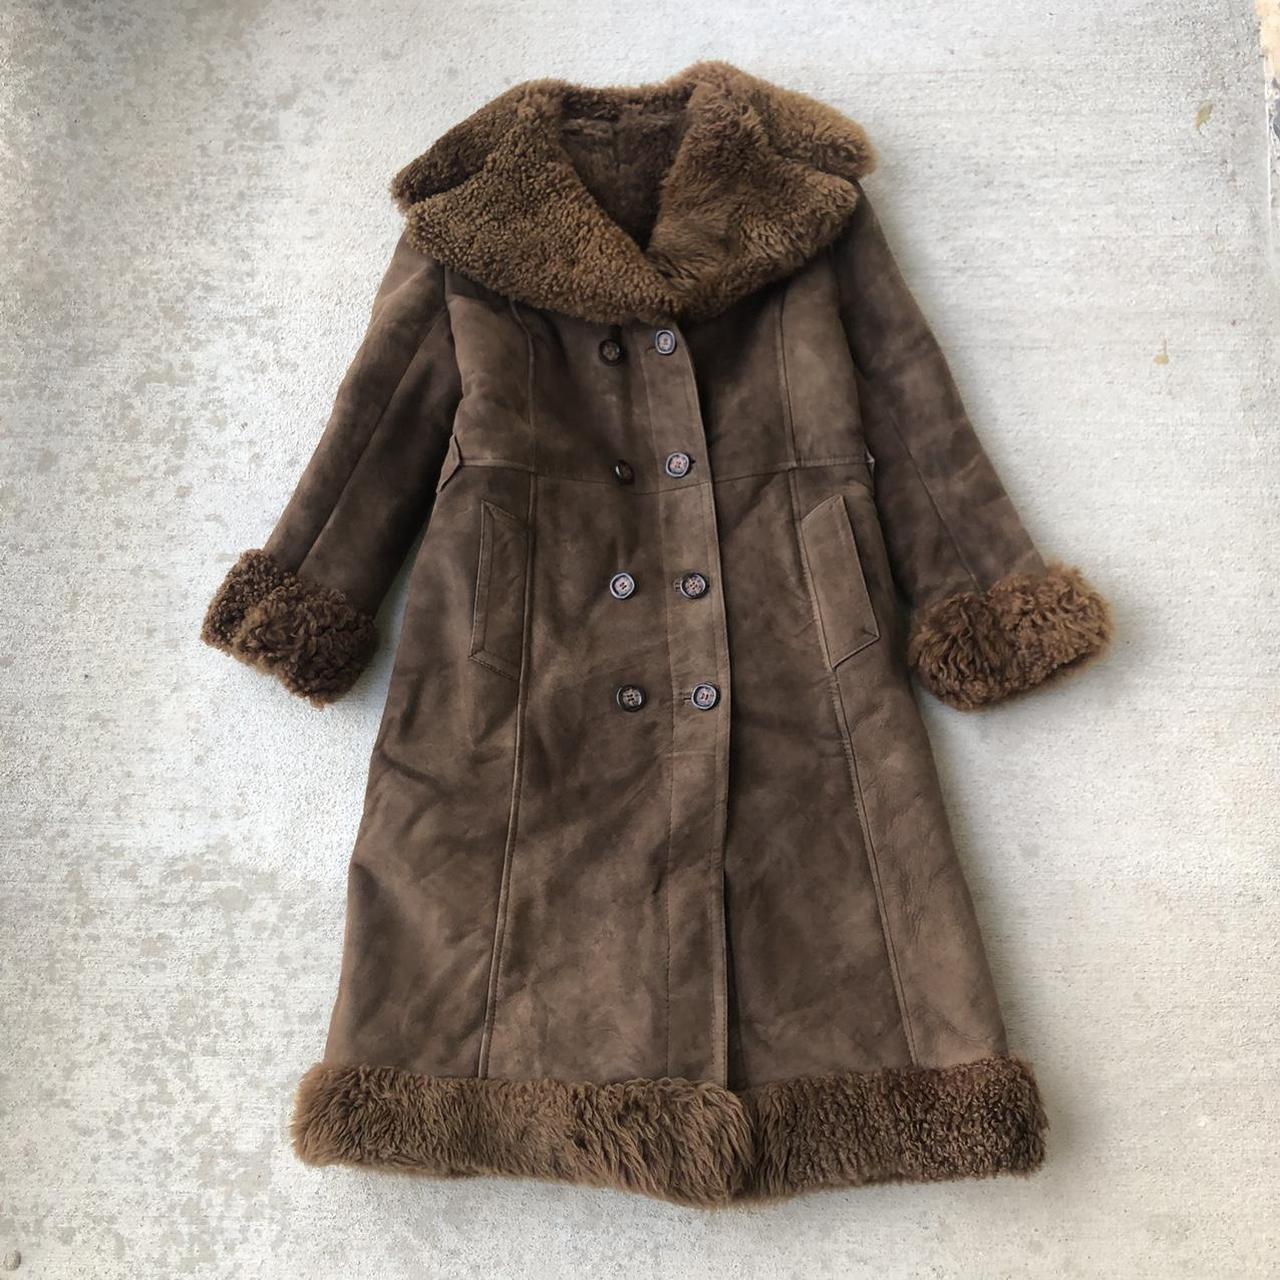 Stunning vintage chocolate brown penny lane coat! In... - Depop